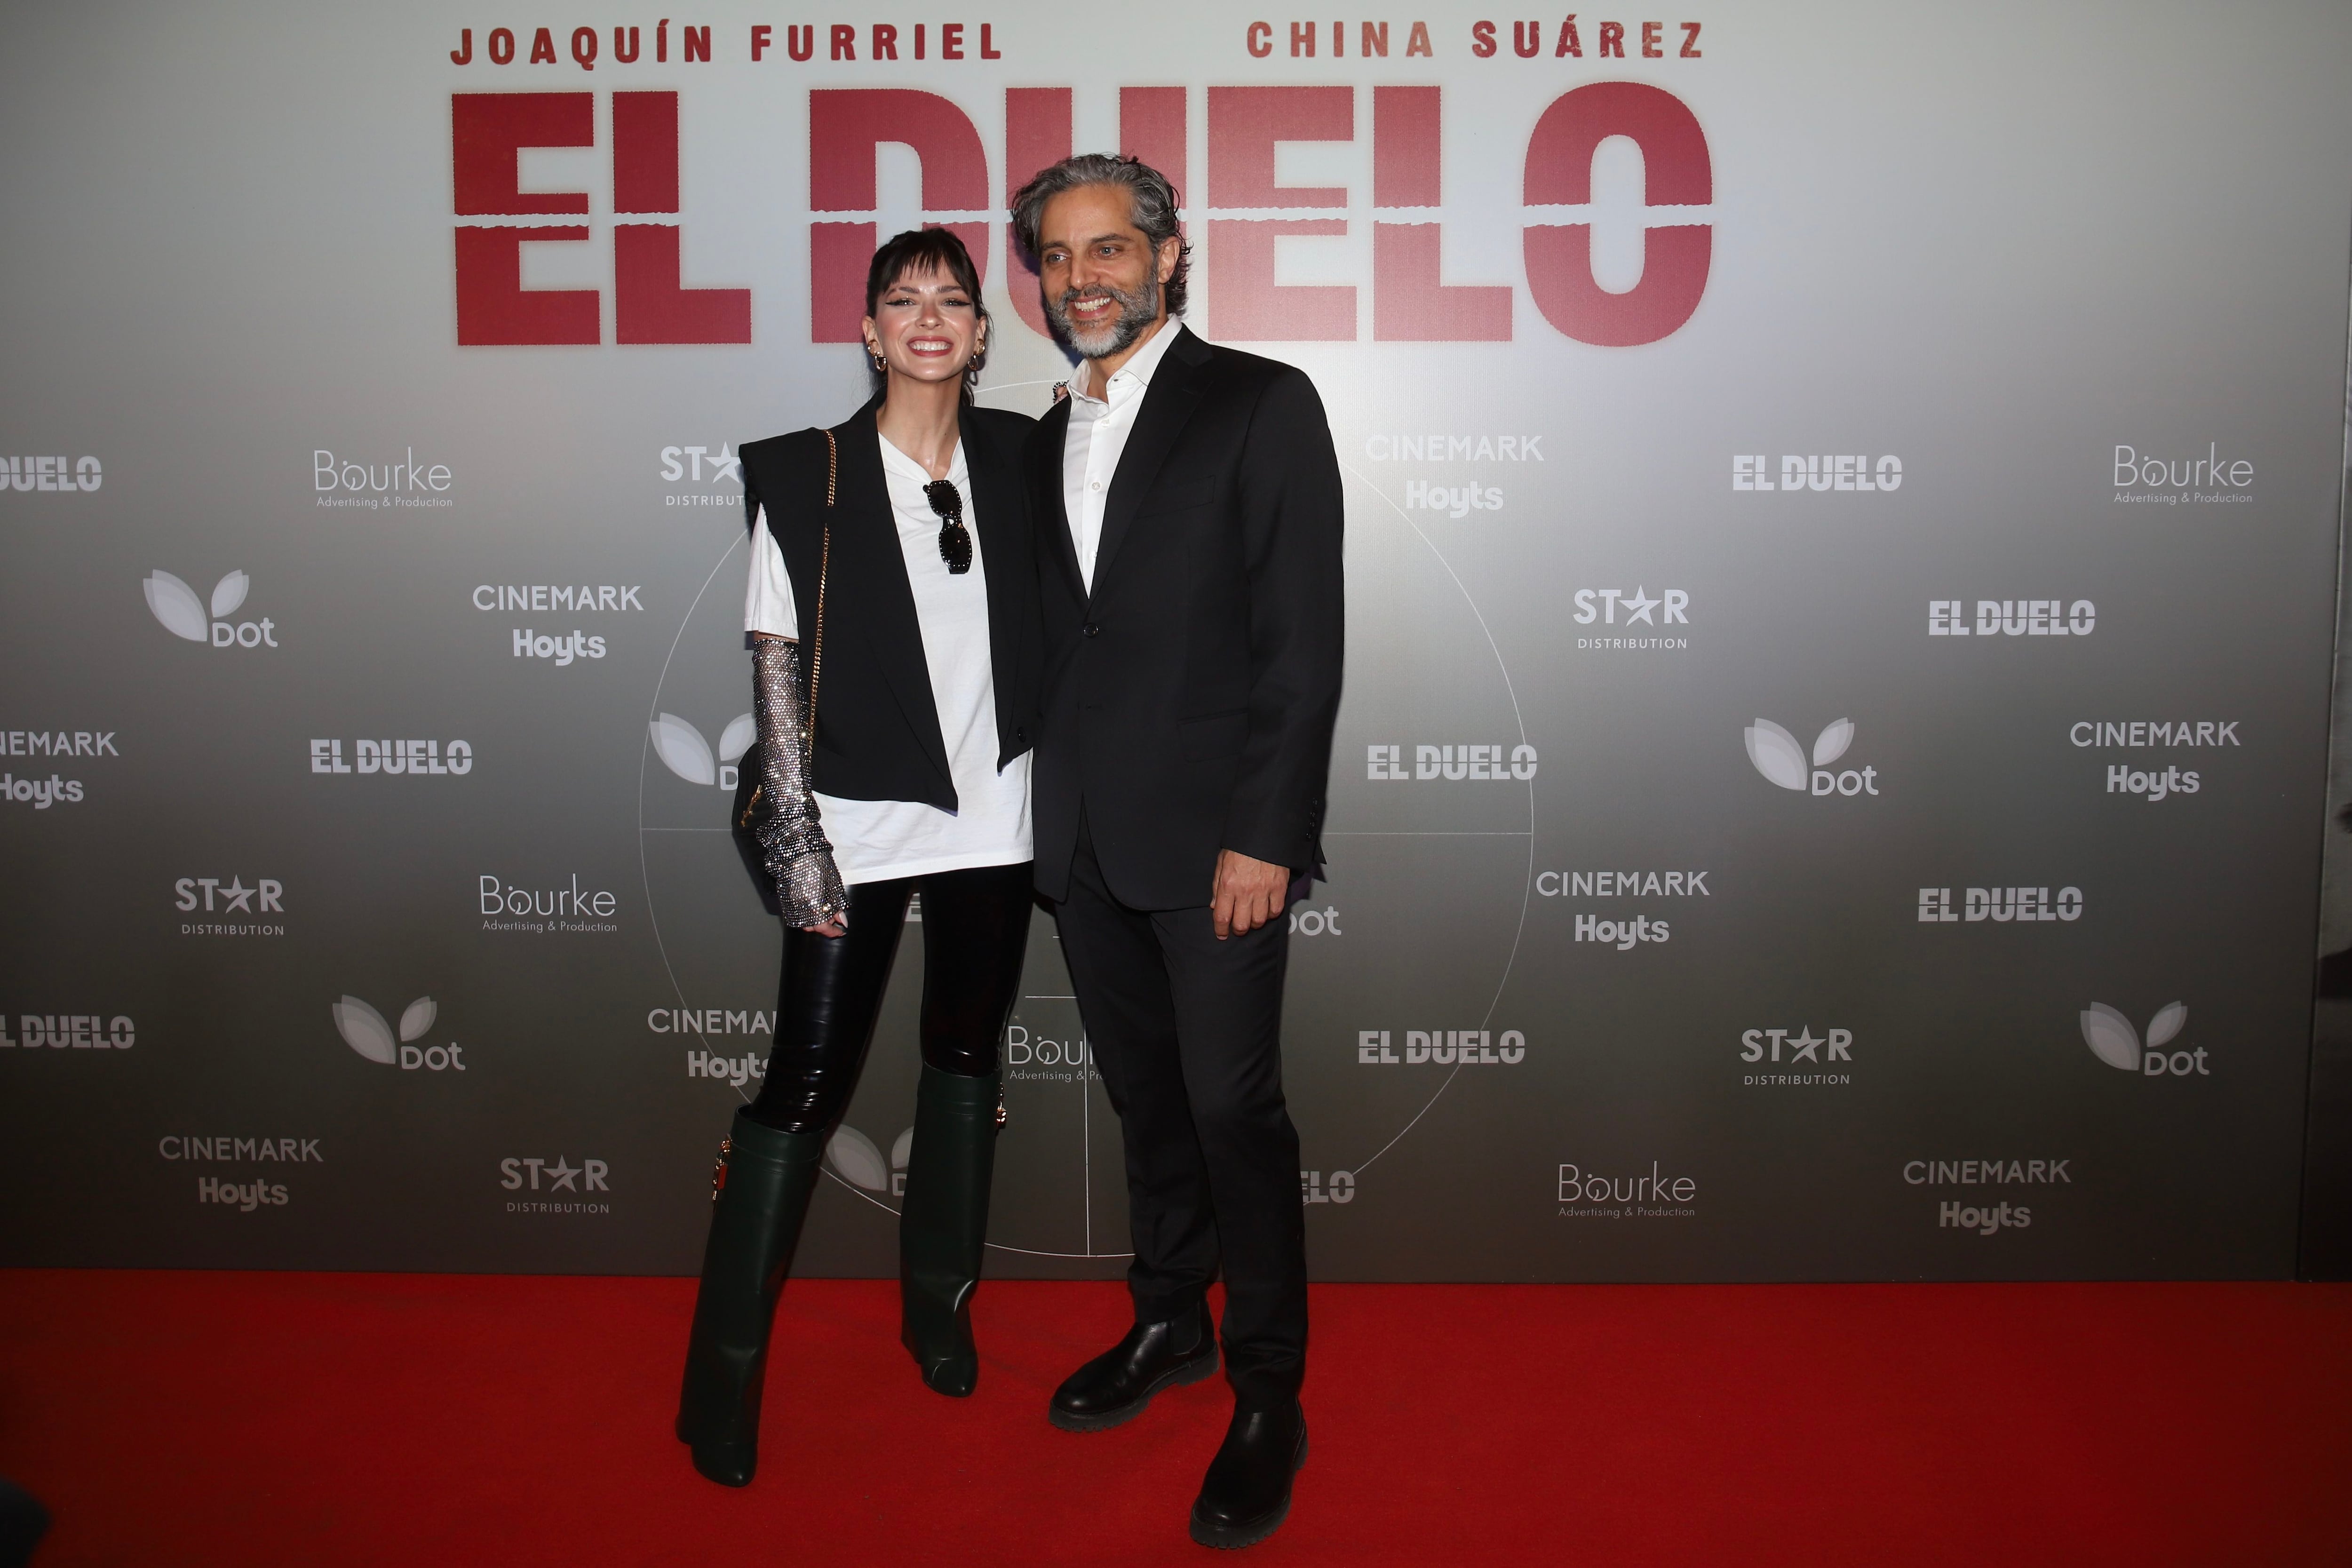 Joaquín Furriel y la China Suárez en la premiere de El duelo (RS Fotos)